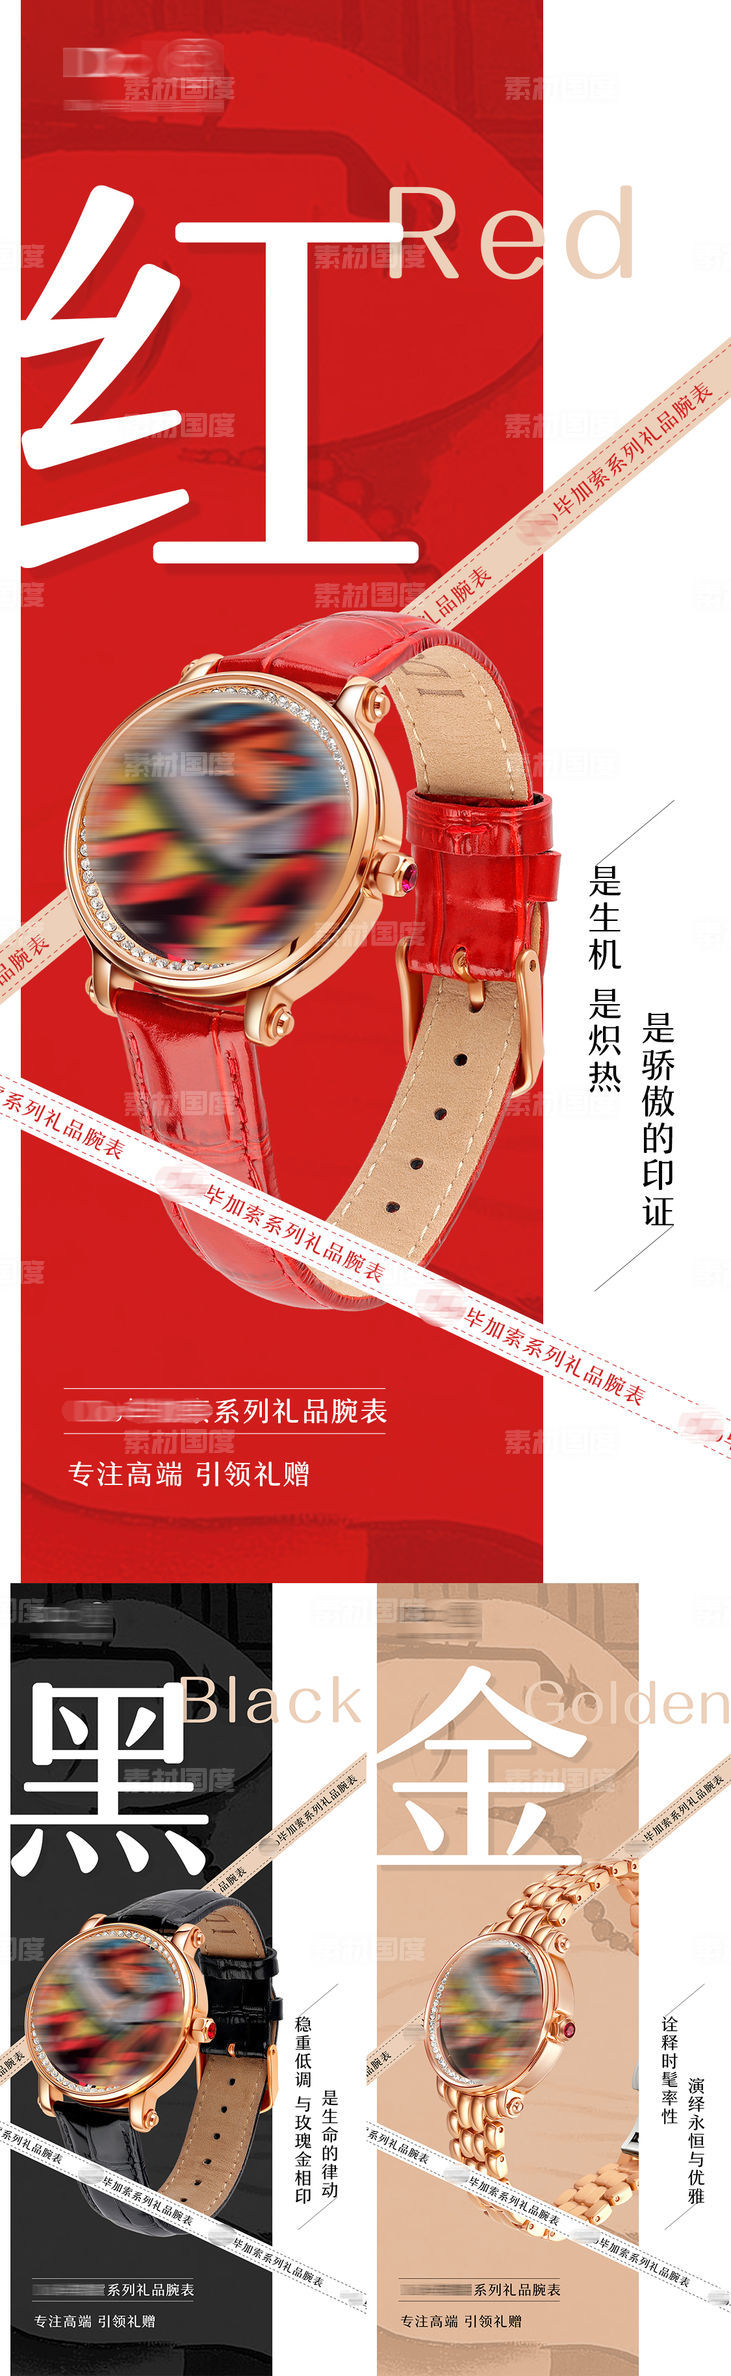 品牌腕表手表宣传海报设计